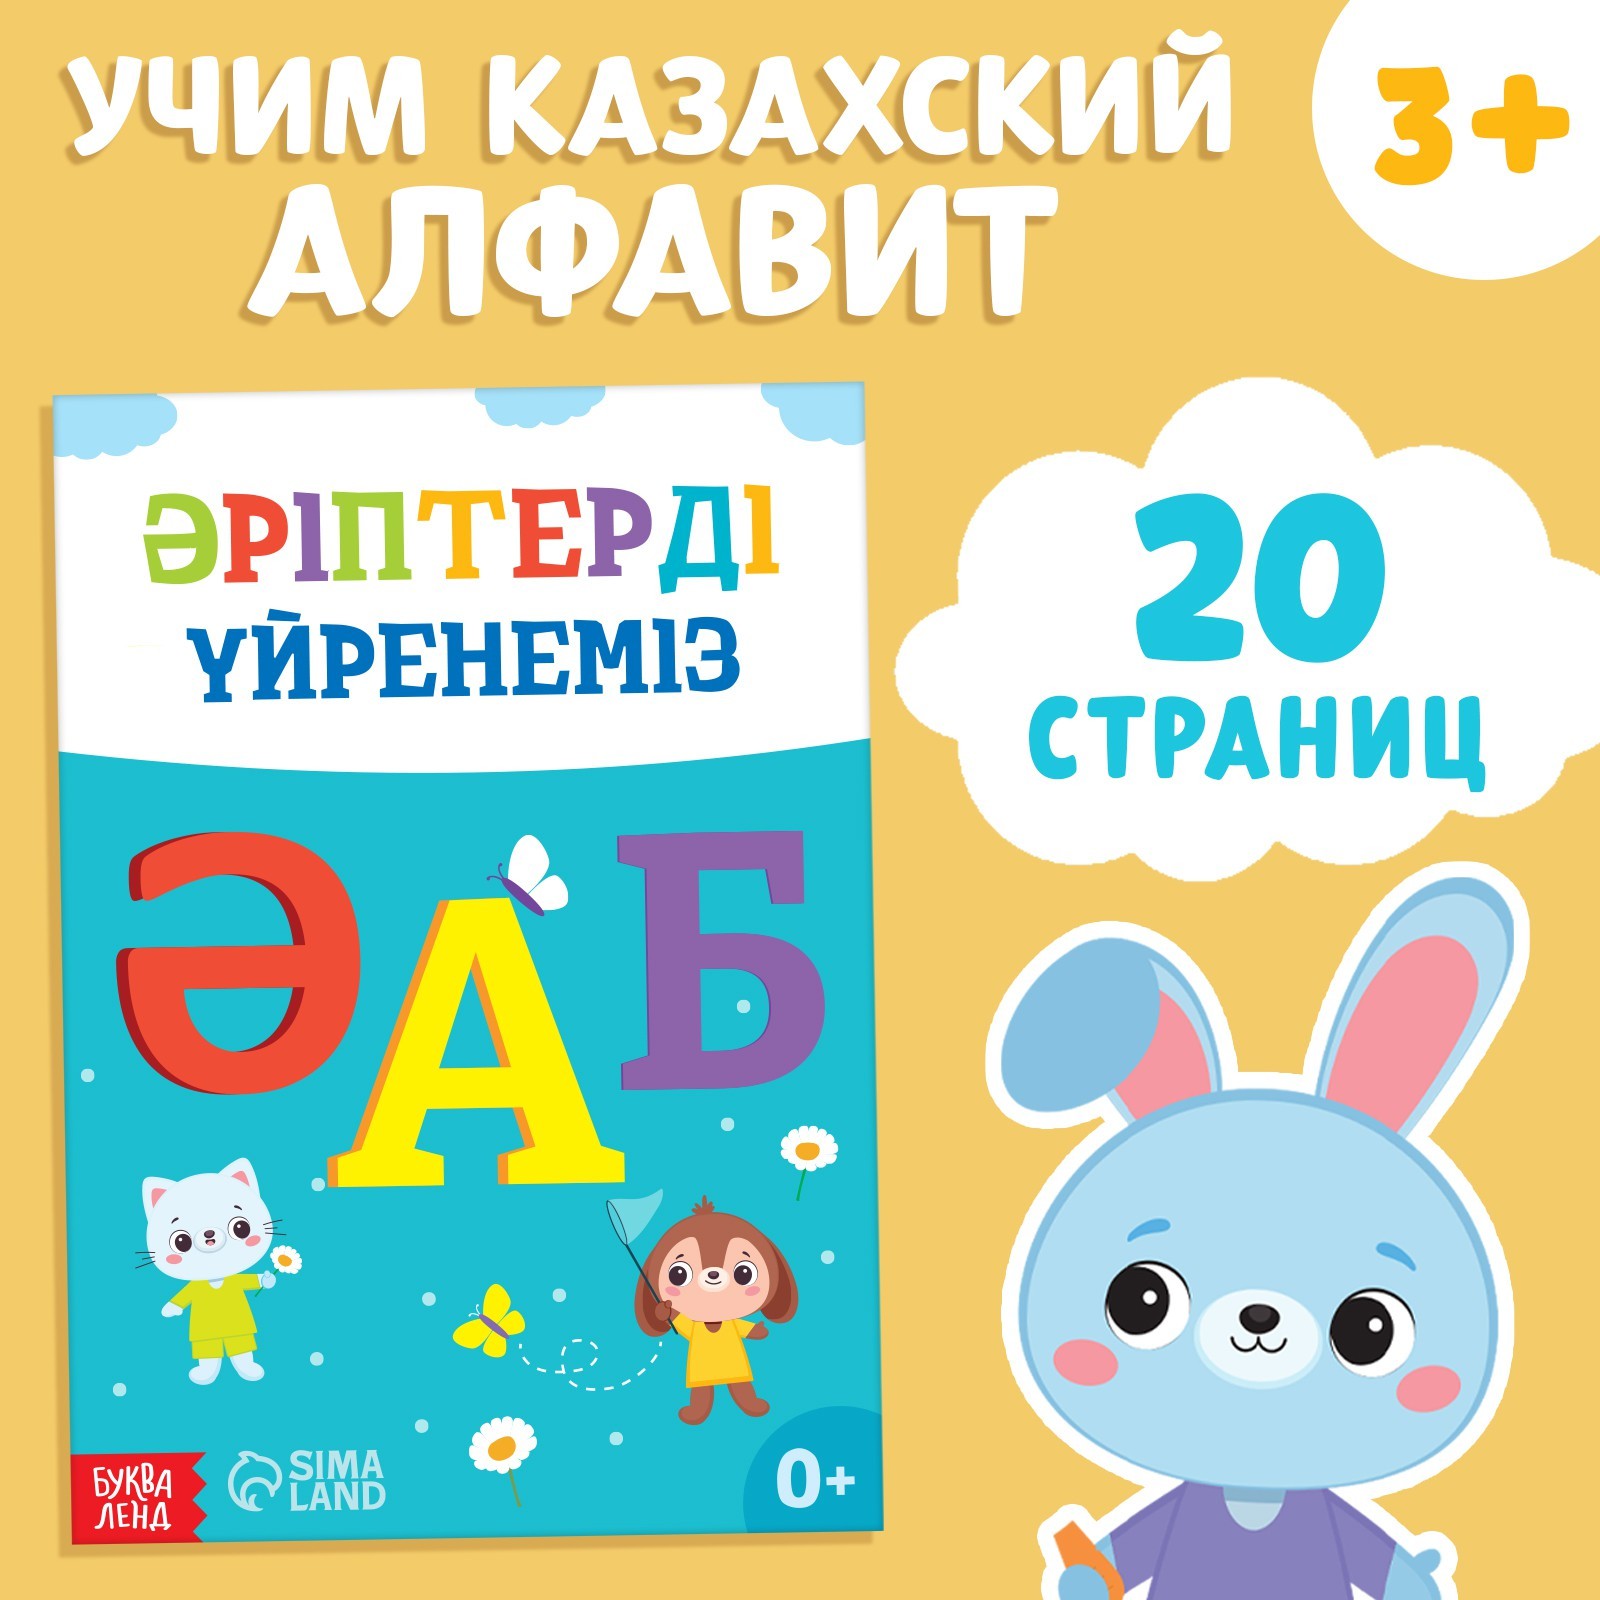 Обучающая книга Учим буквы, казахский язык, 20 стр. 9909054